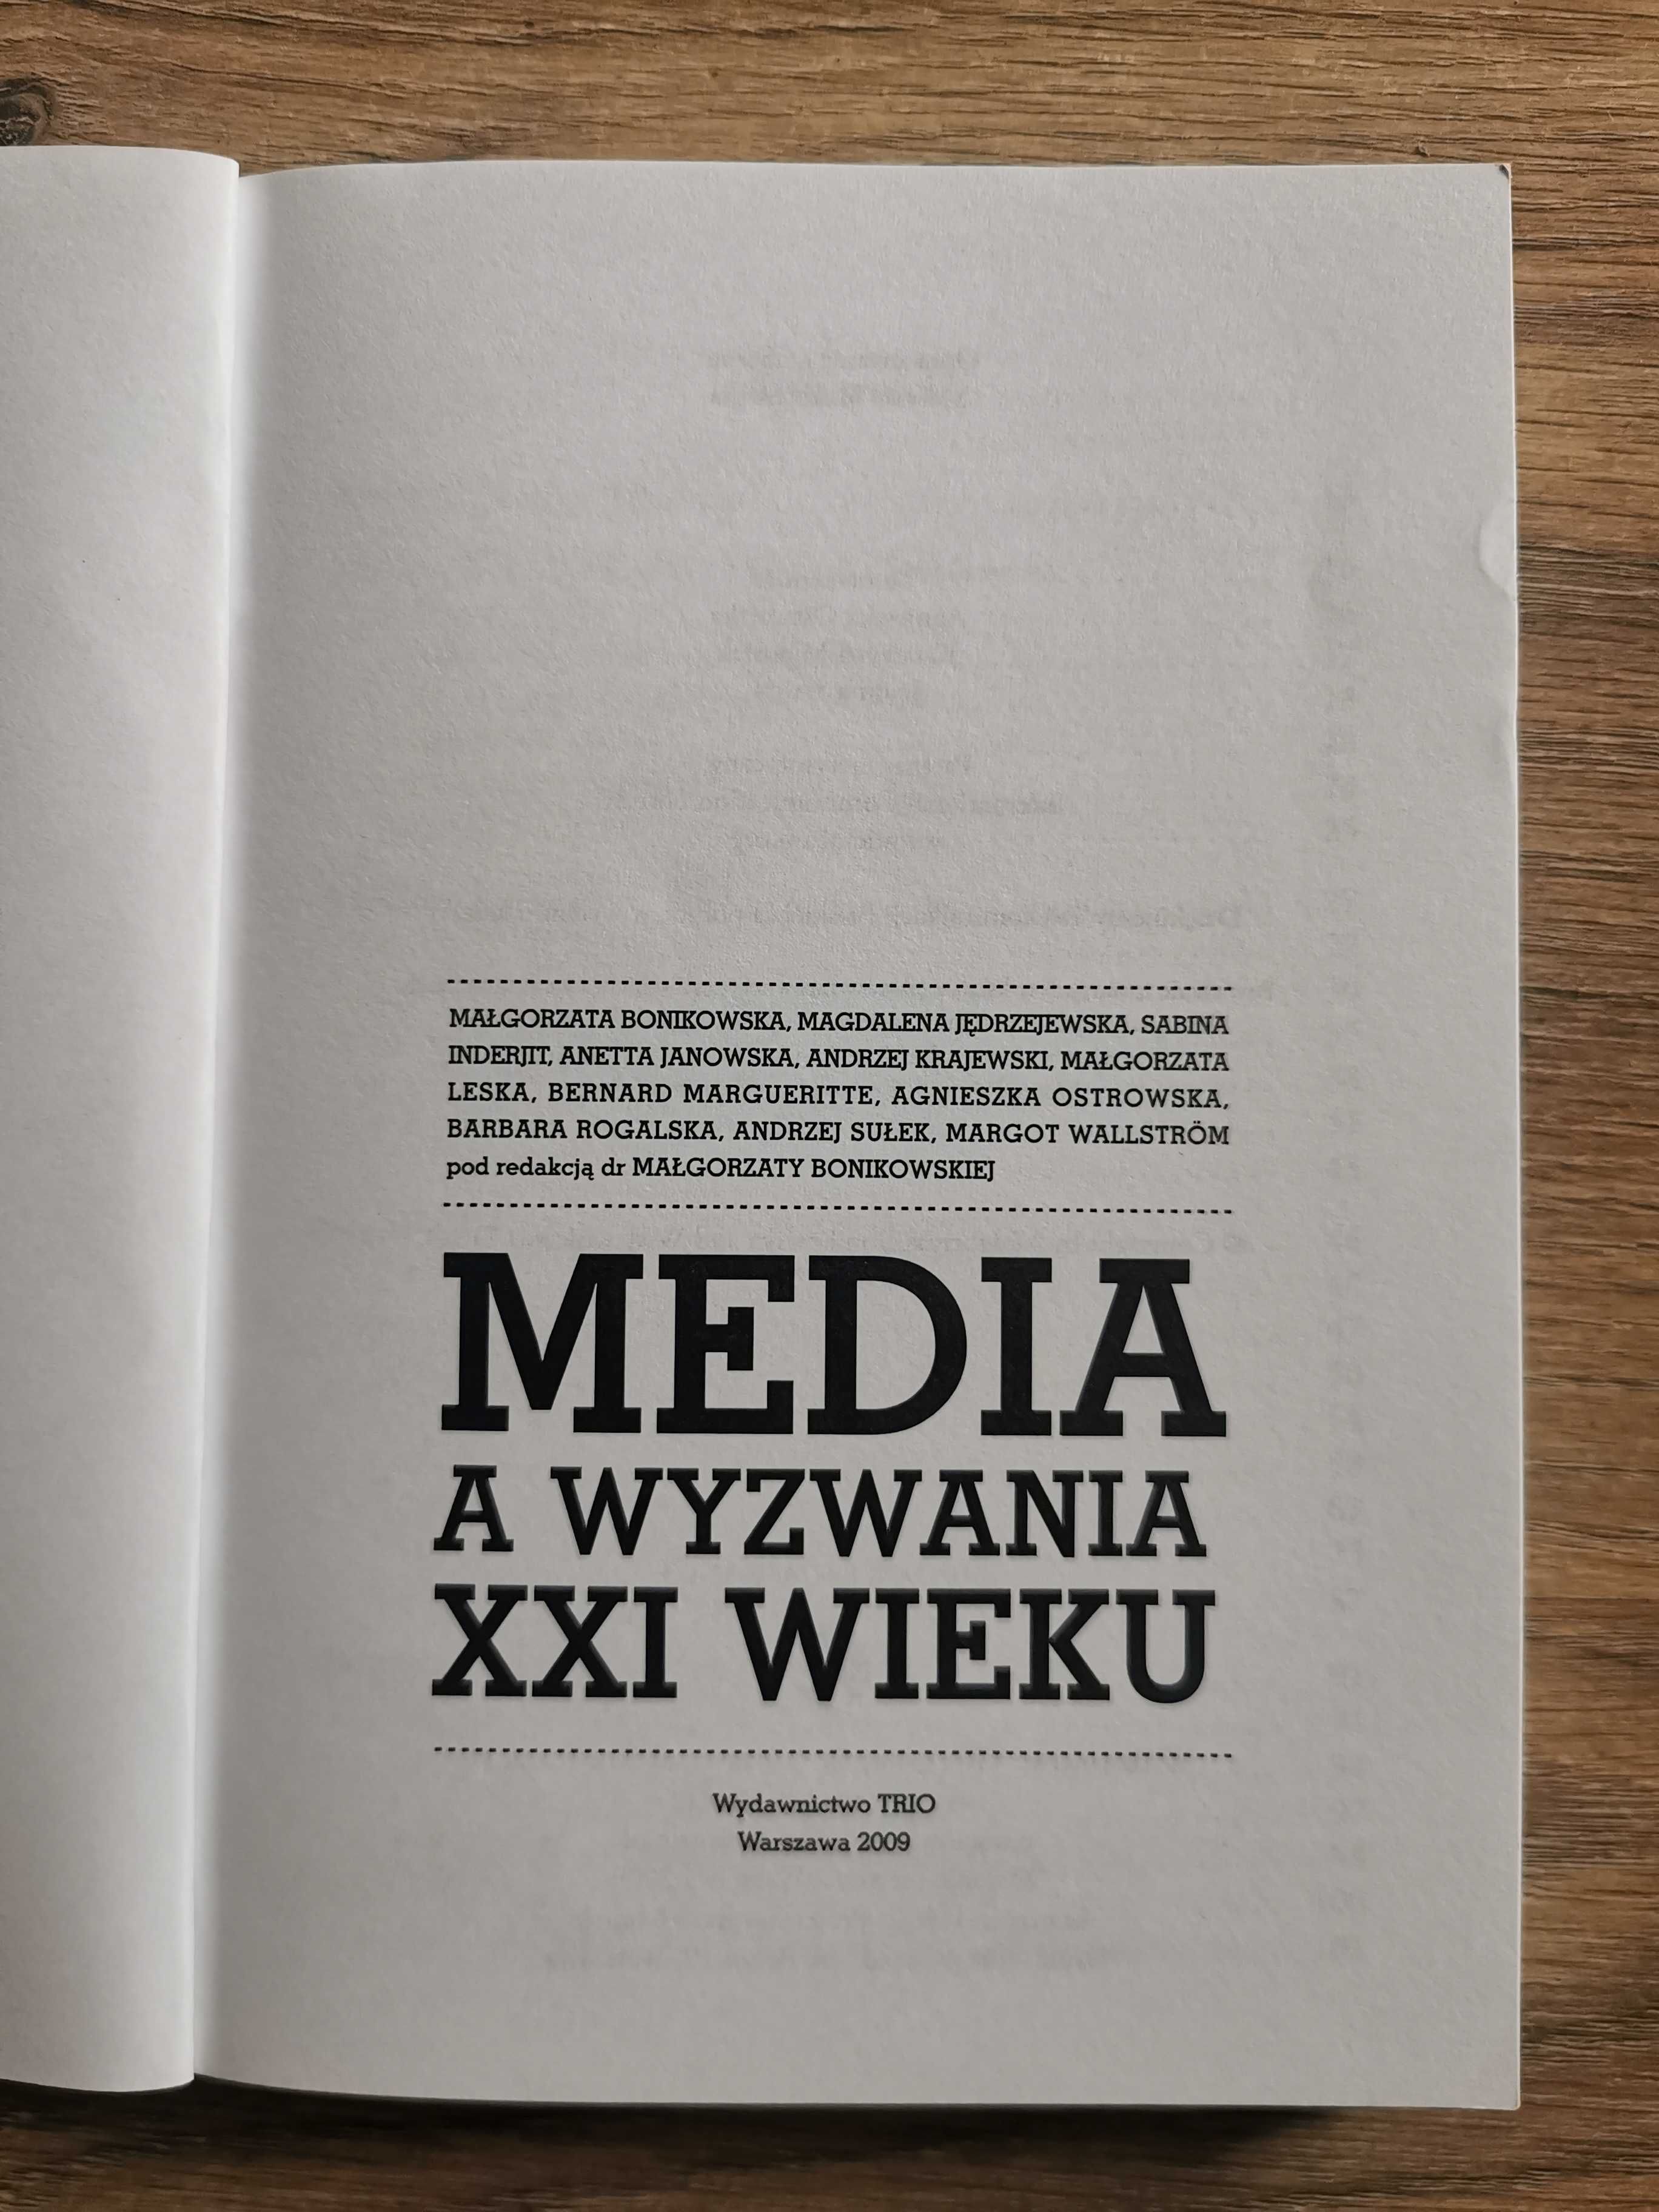 Media a Wyzwania XXI WIEKU M.Bonikowska